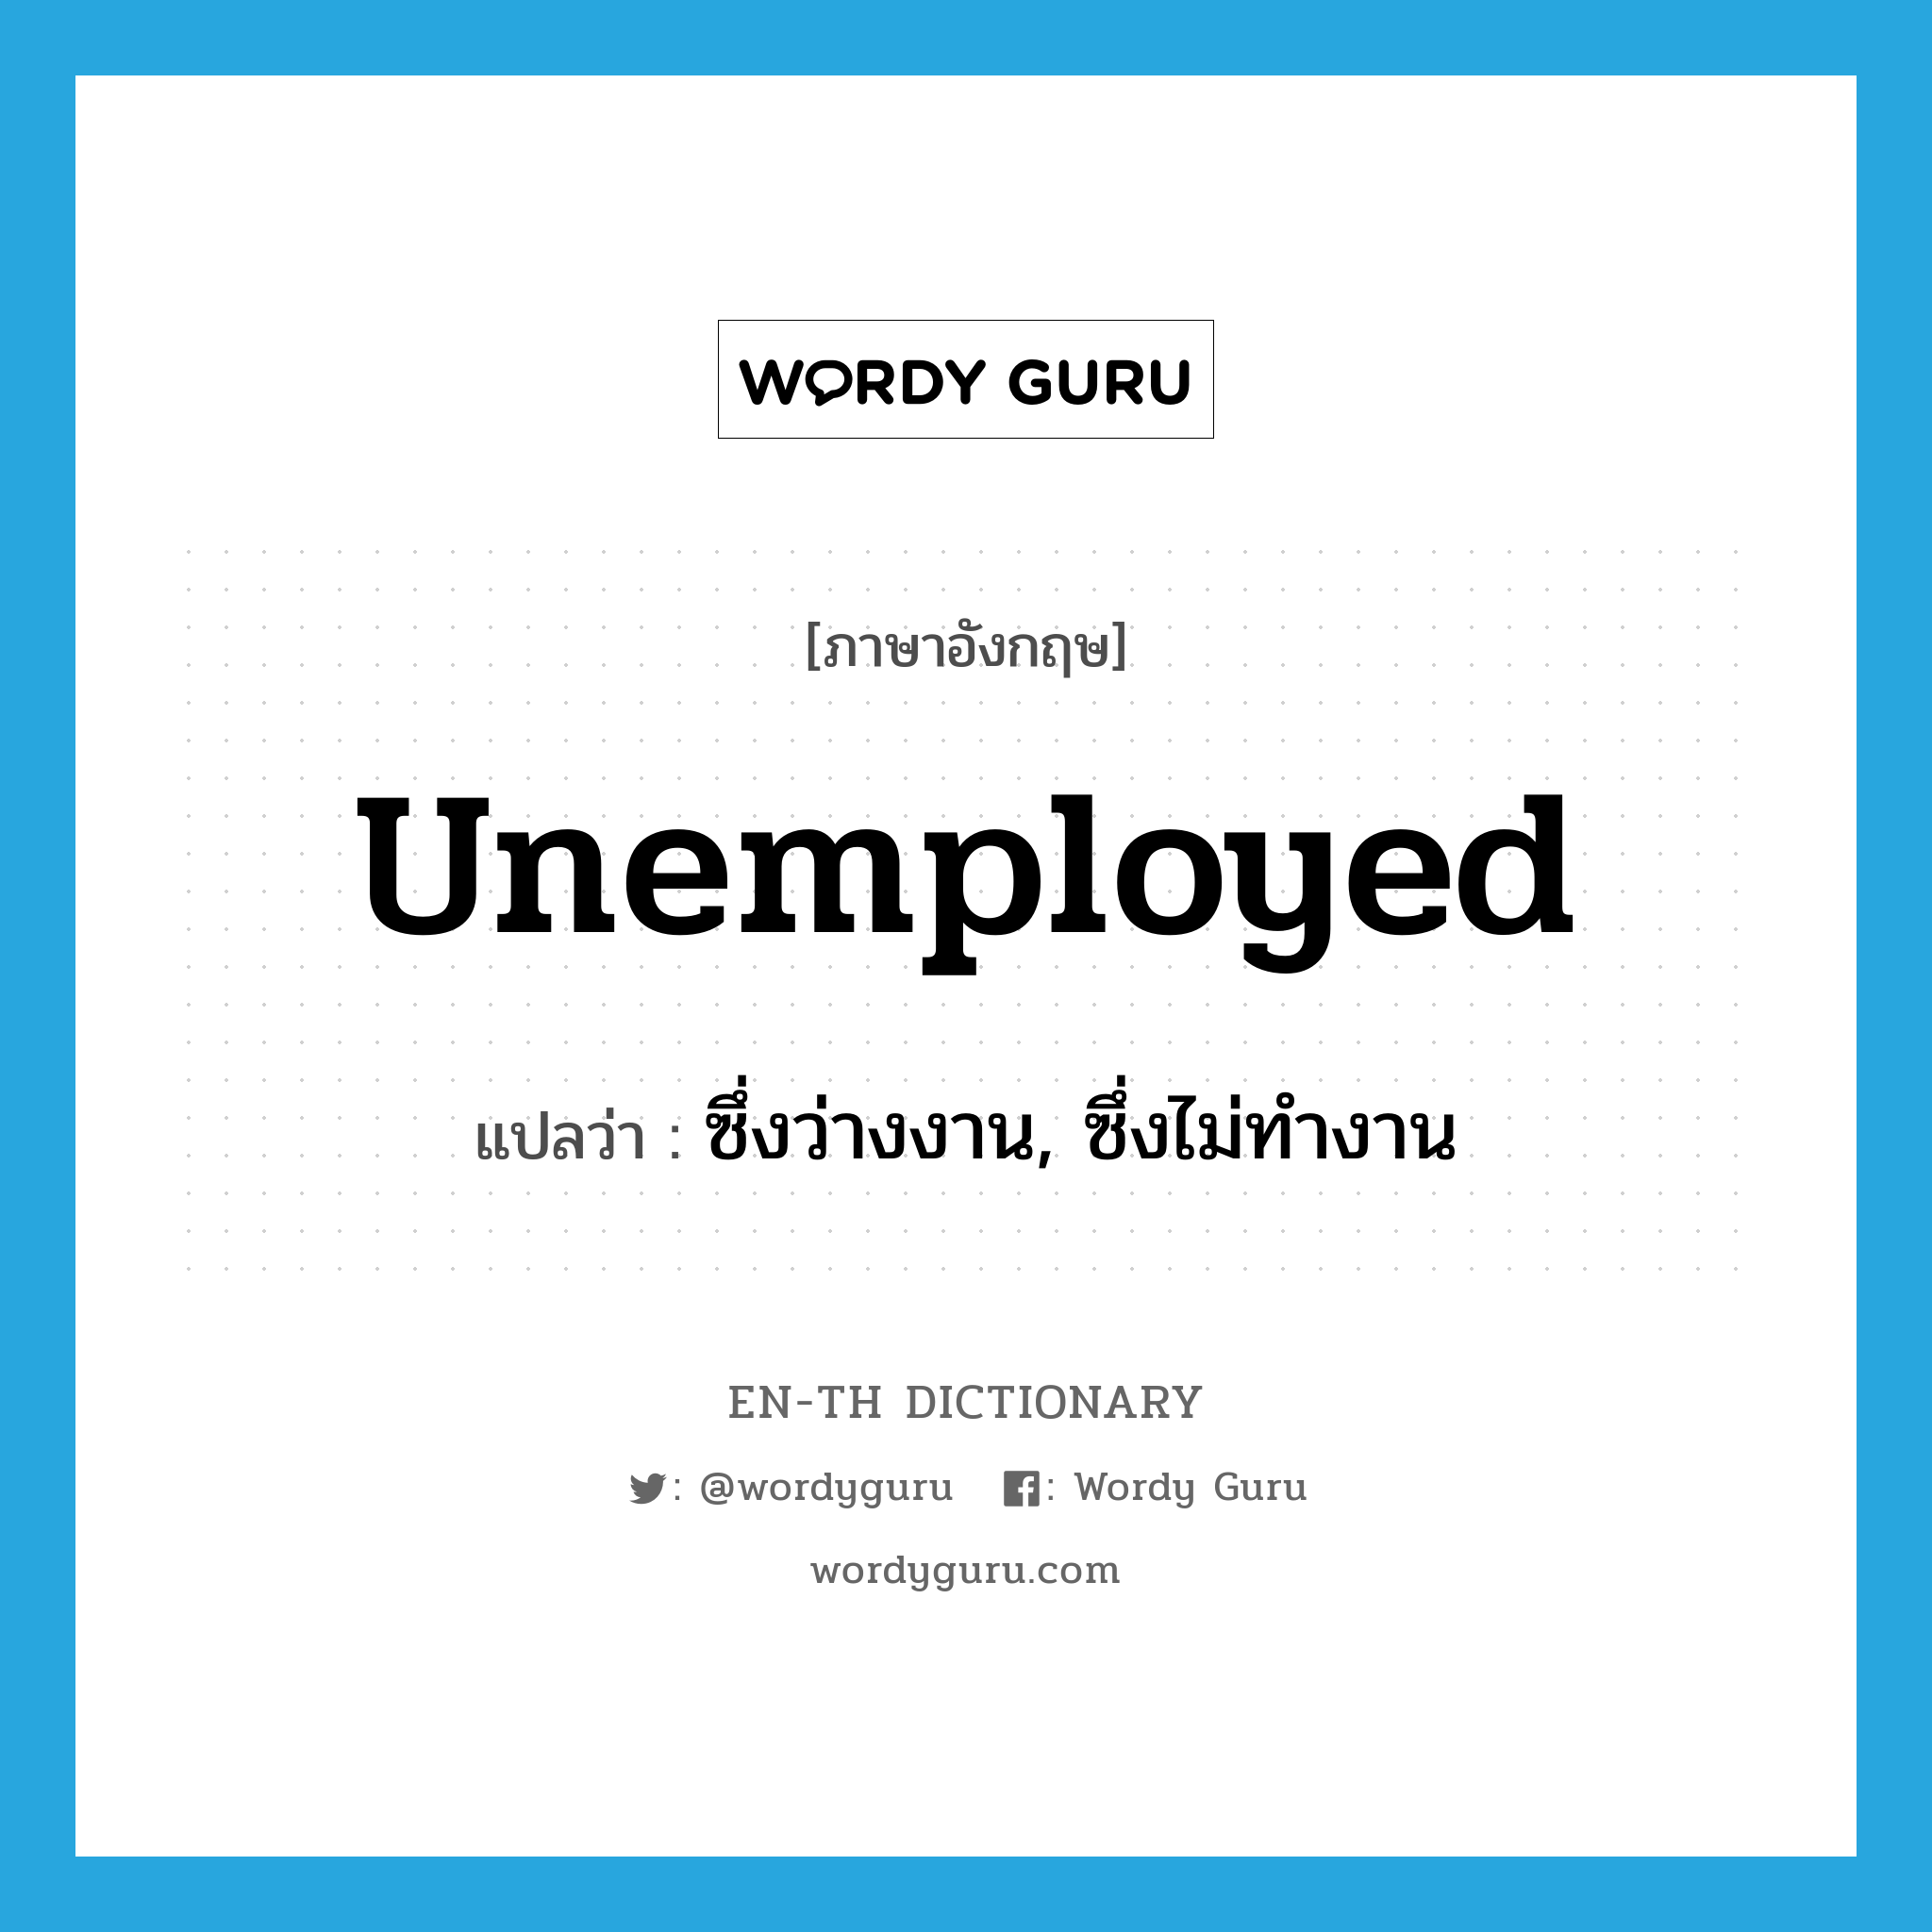 ซึ่งว่างงาน, ซึ่งไม่ทำงาน ภาษาอังกฤษ?, คำศัพท์ภาษาอังกฤษ ซึ่งว่างงาน, ซึ่งไม่ทำงาน แปลว่า unemployed ประเภท ADJ หมวด ADJ